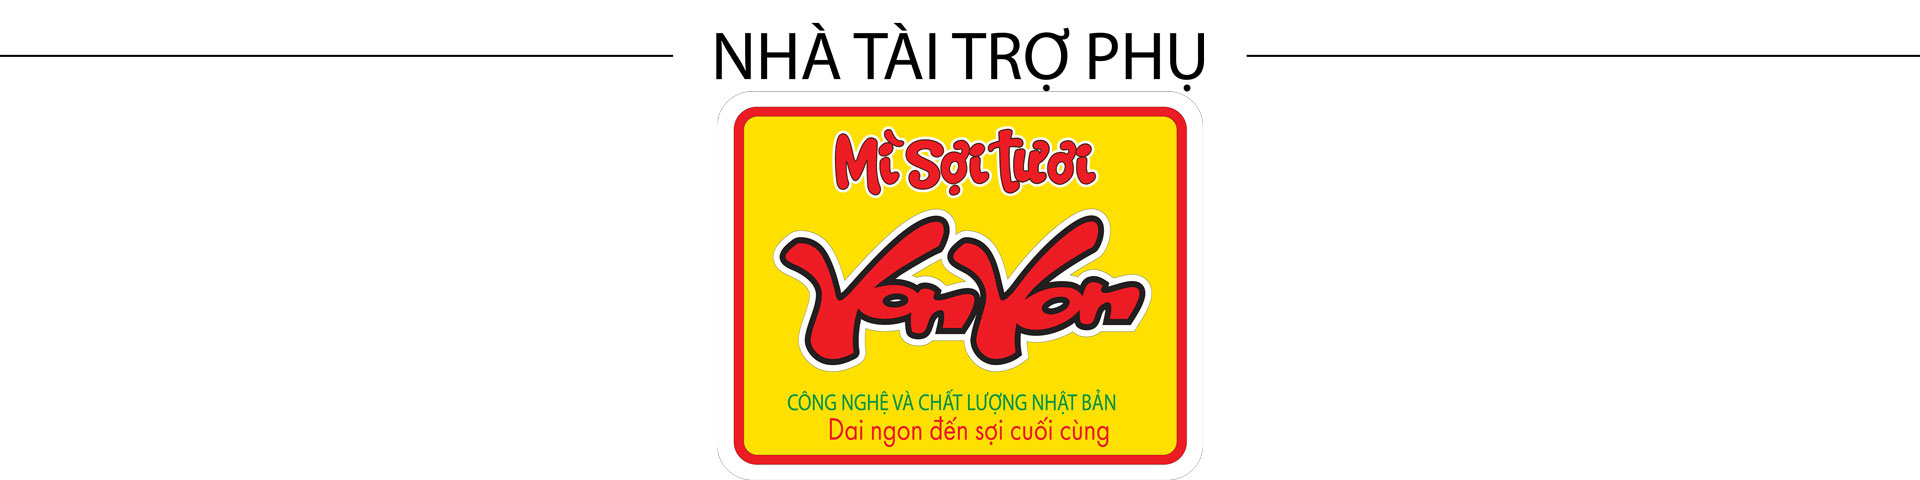 Quang Thắng mừng hết cỡ khi gặp ‘nghệ sĩ Vân Dung’ tại chợ huyện Đầm Hà - Ảnh 4.